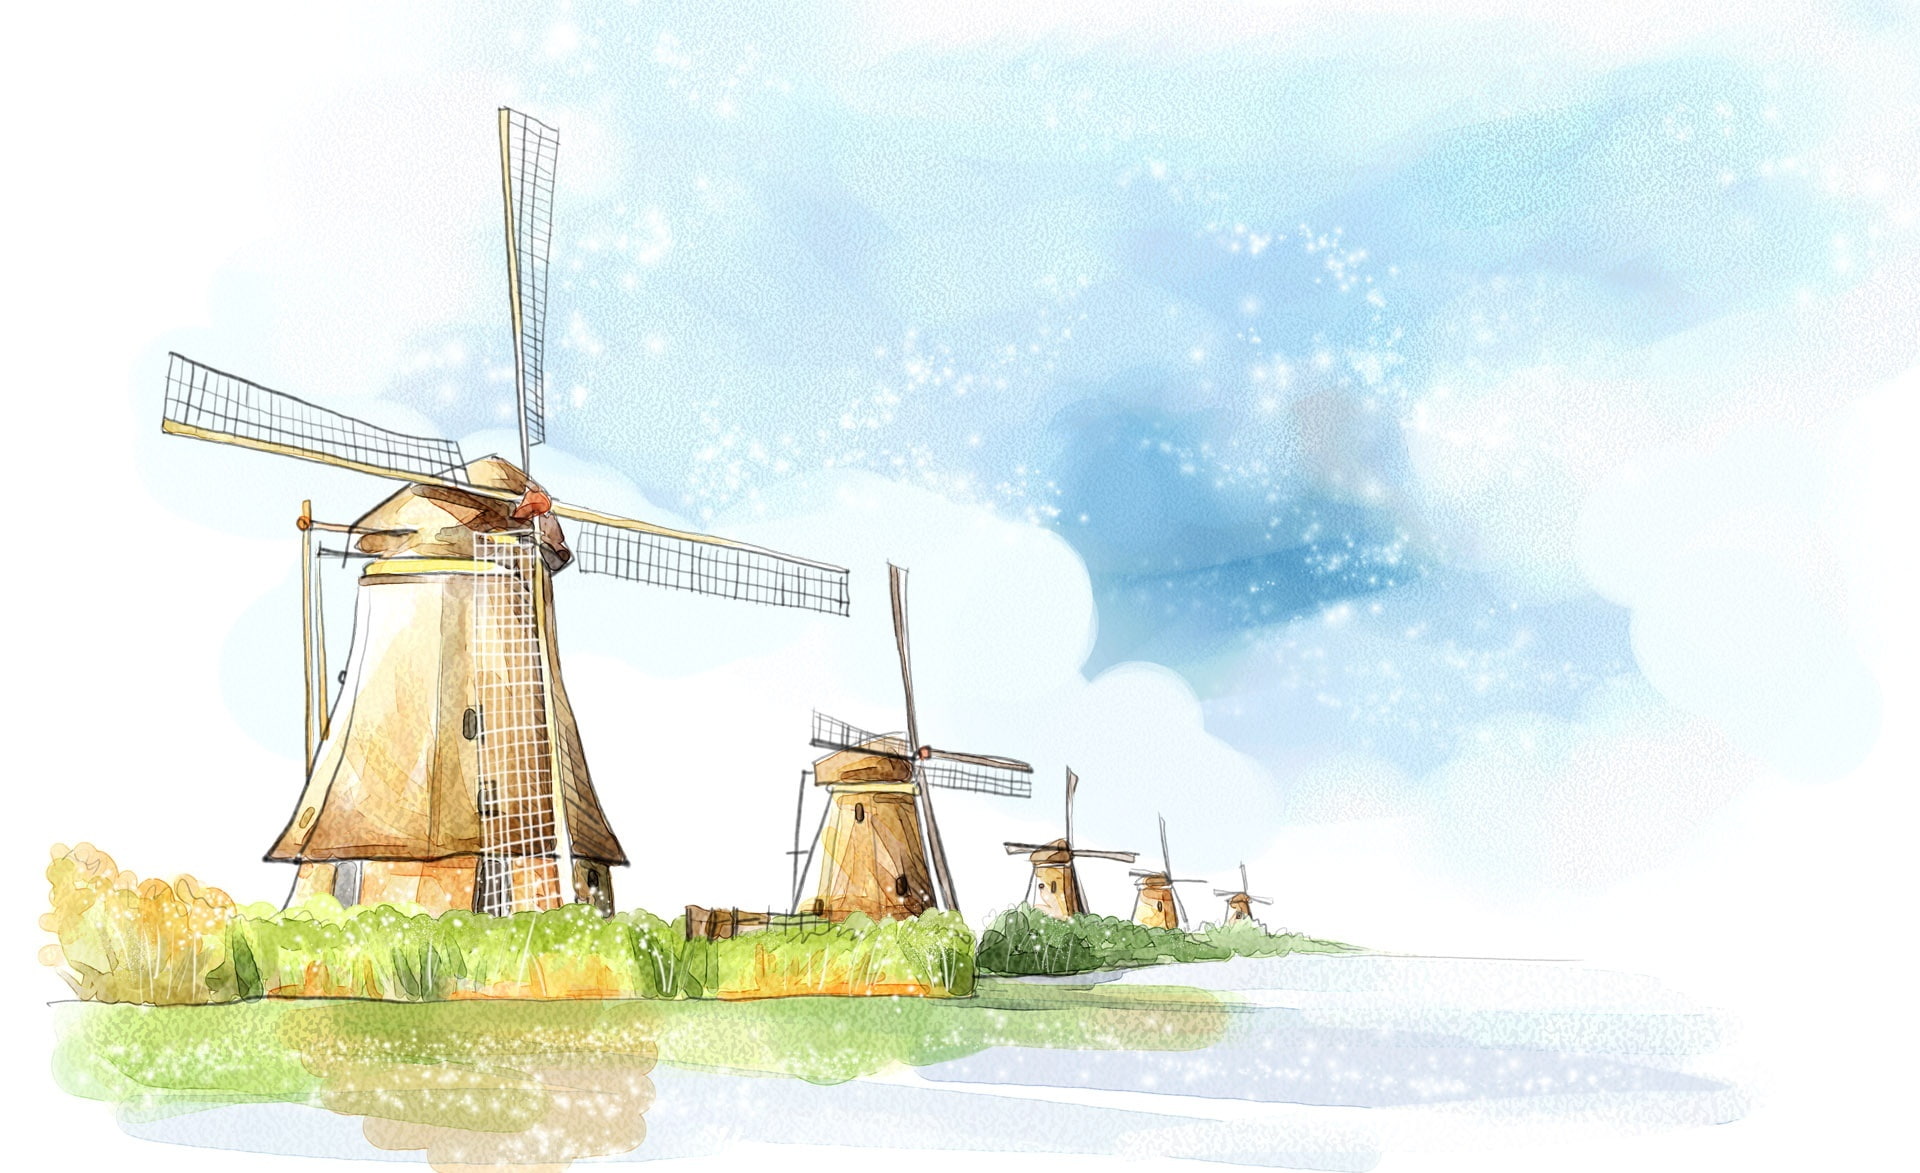 2D Digital Art 25, windmill near body of water illustrationb